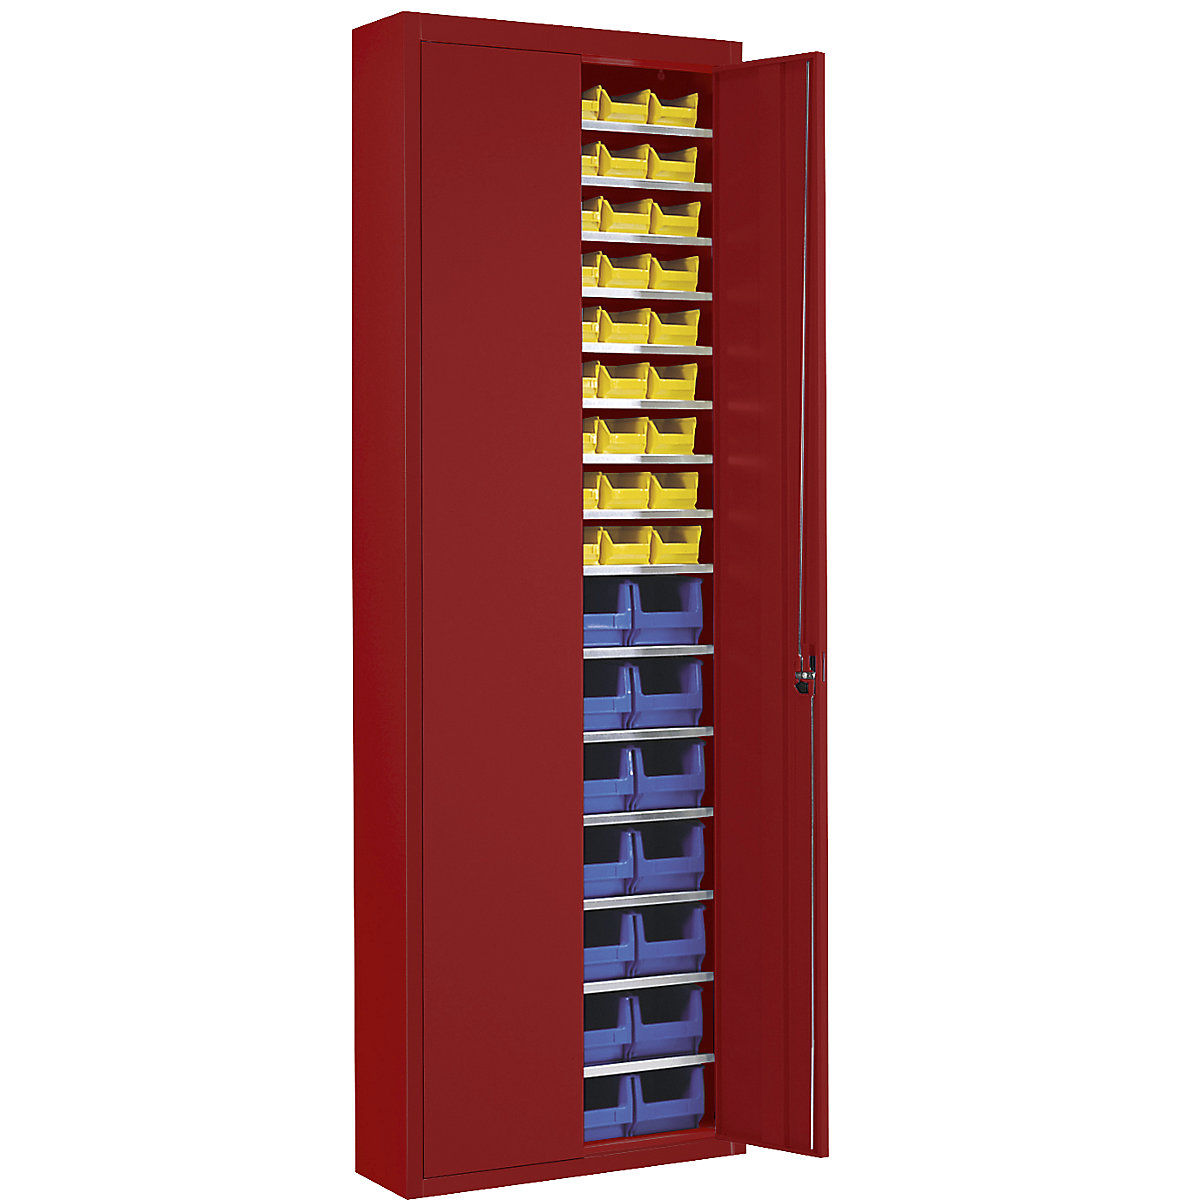 Magazinschrank mit Sichtlagerkästen mauser, HxBxT 2150 x 680 x 280 mm, einfarbig, rot, 82 Kästen-11